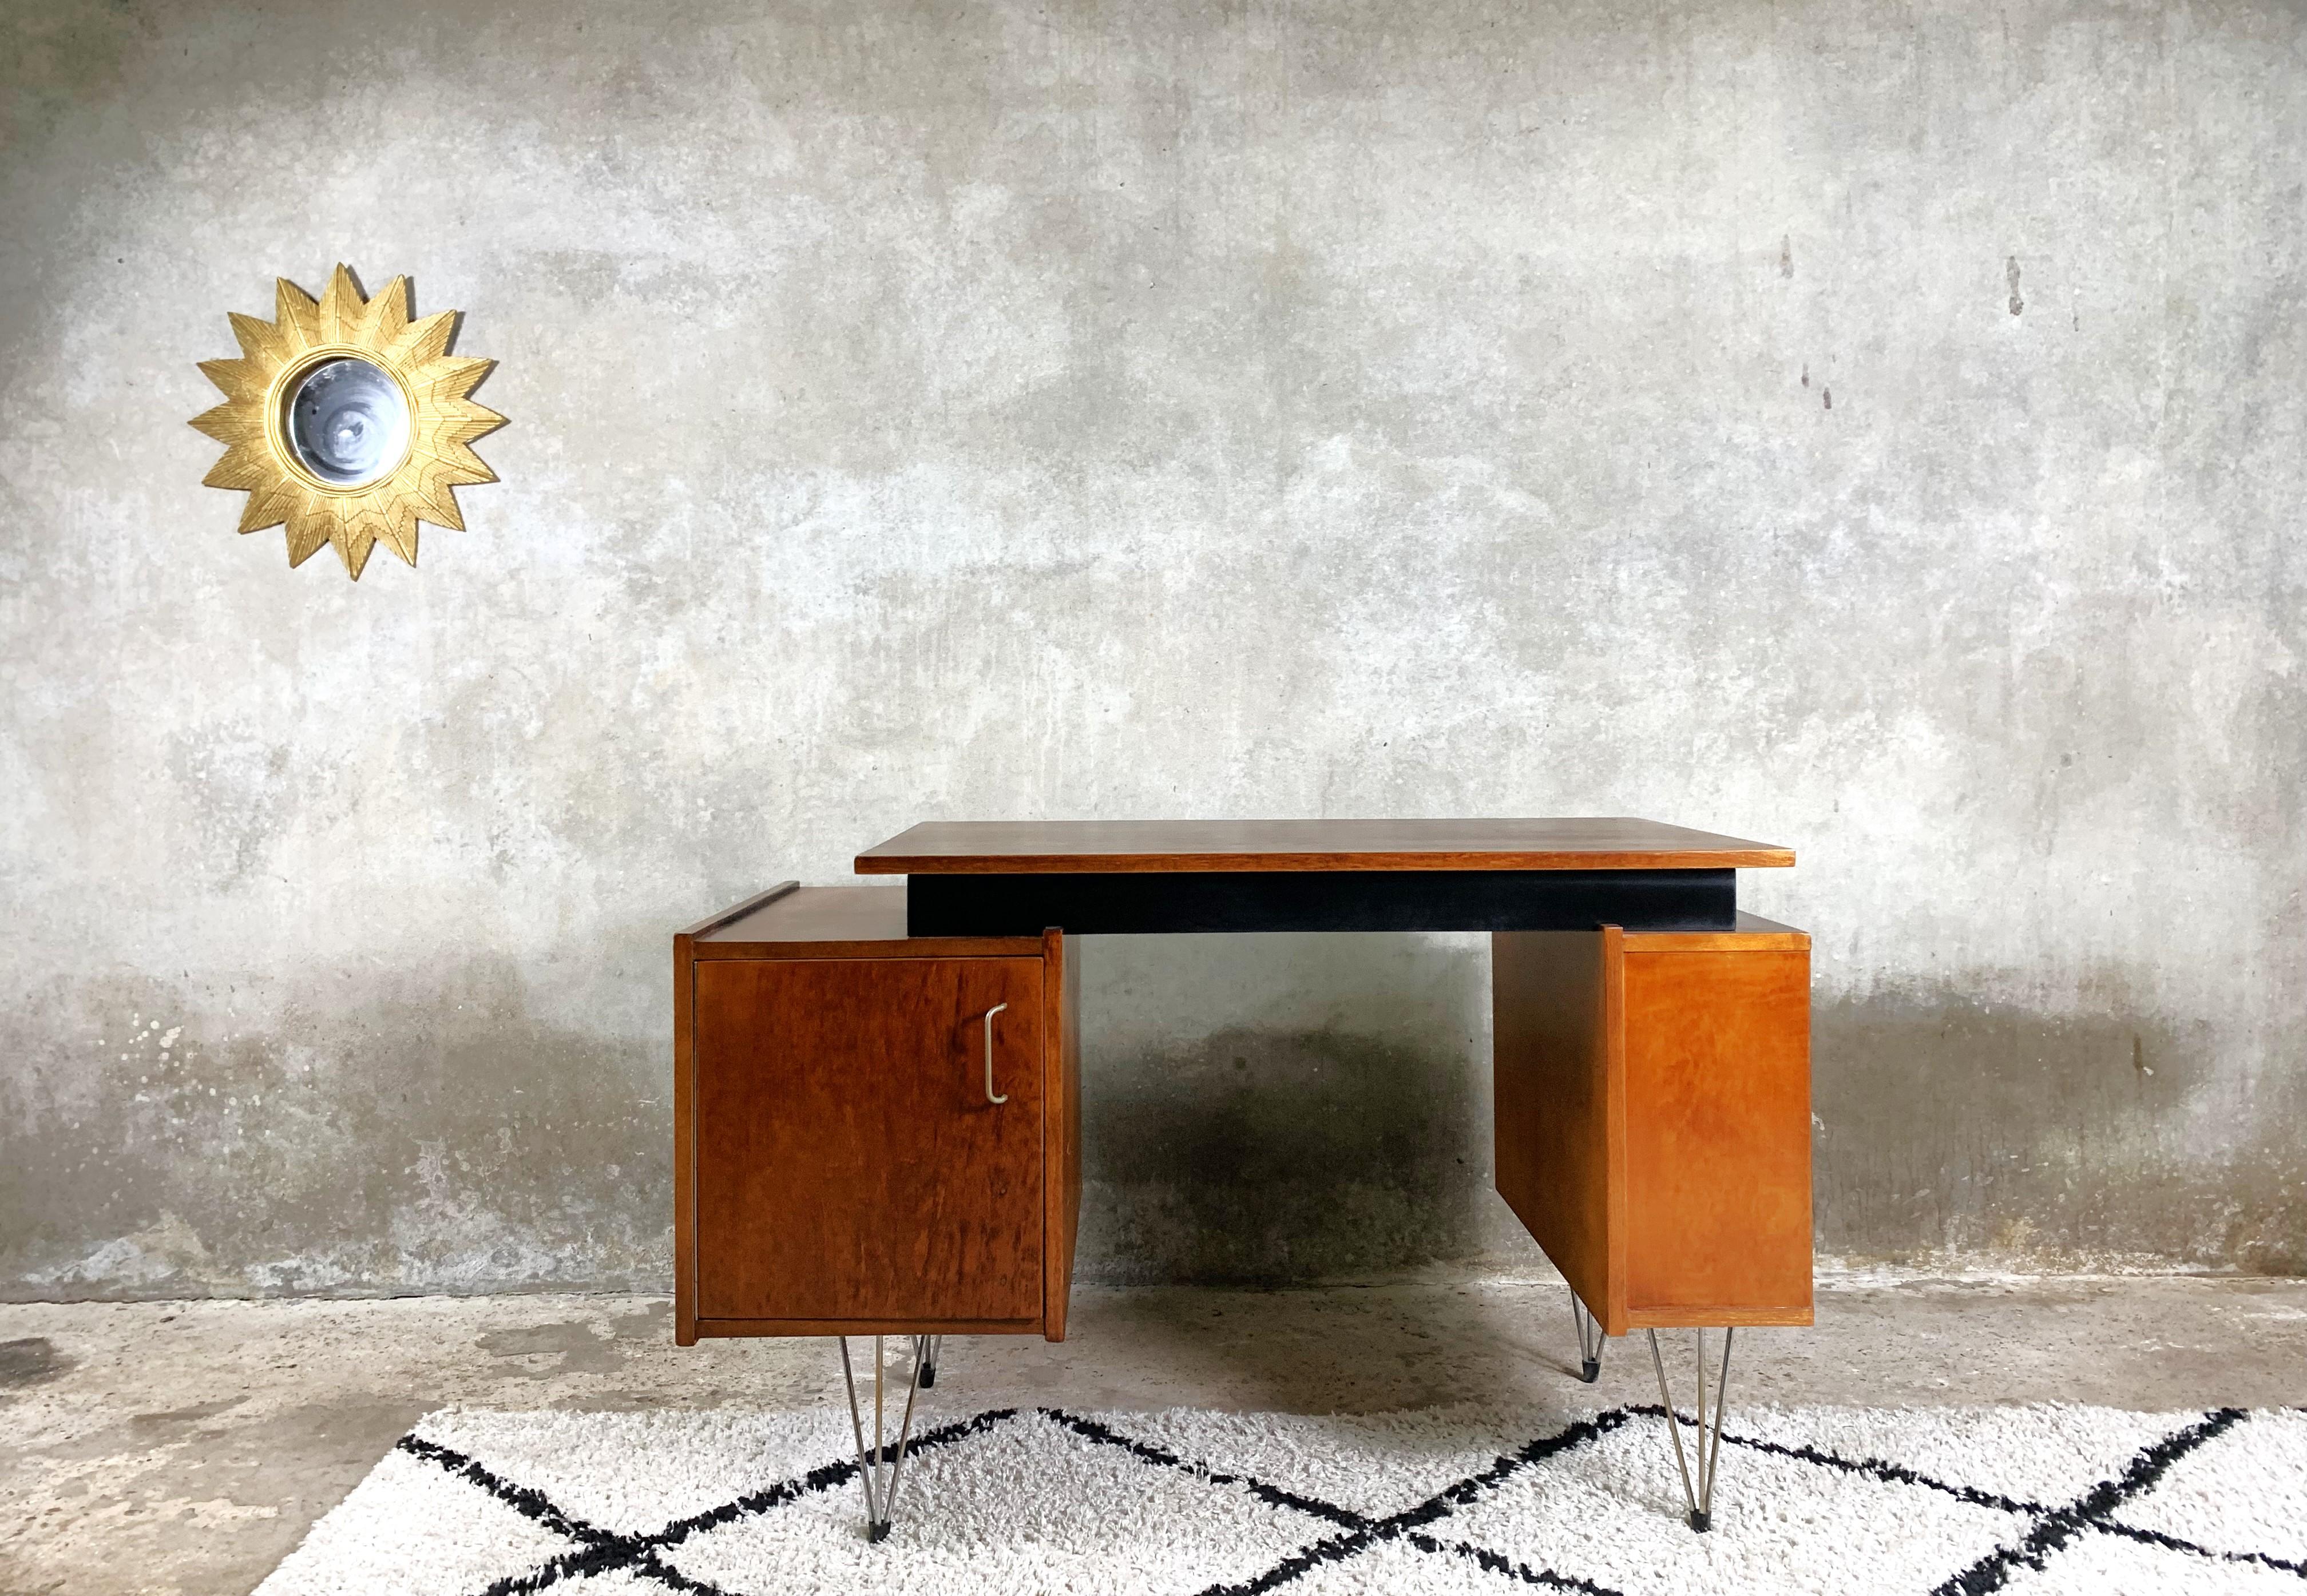 Ein schicker Schreibtisch, entworfen von Cees Braakman für das Label Pastoe. Ein äußerst seltenes Modell mit zwei Schränken auf Metallbeinen. Der Schreibtisch ist furniert, die Innenschubladen wurden renoviert. Ein schönes Beispiel für